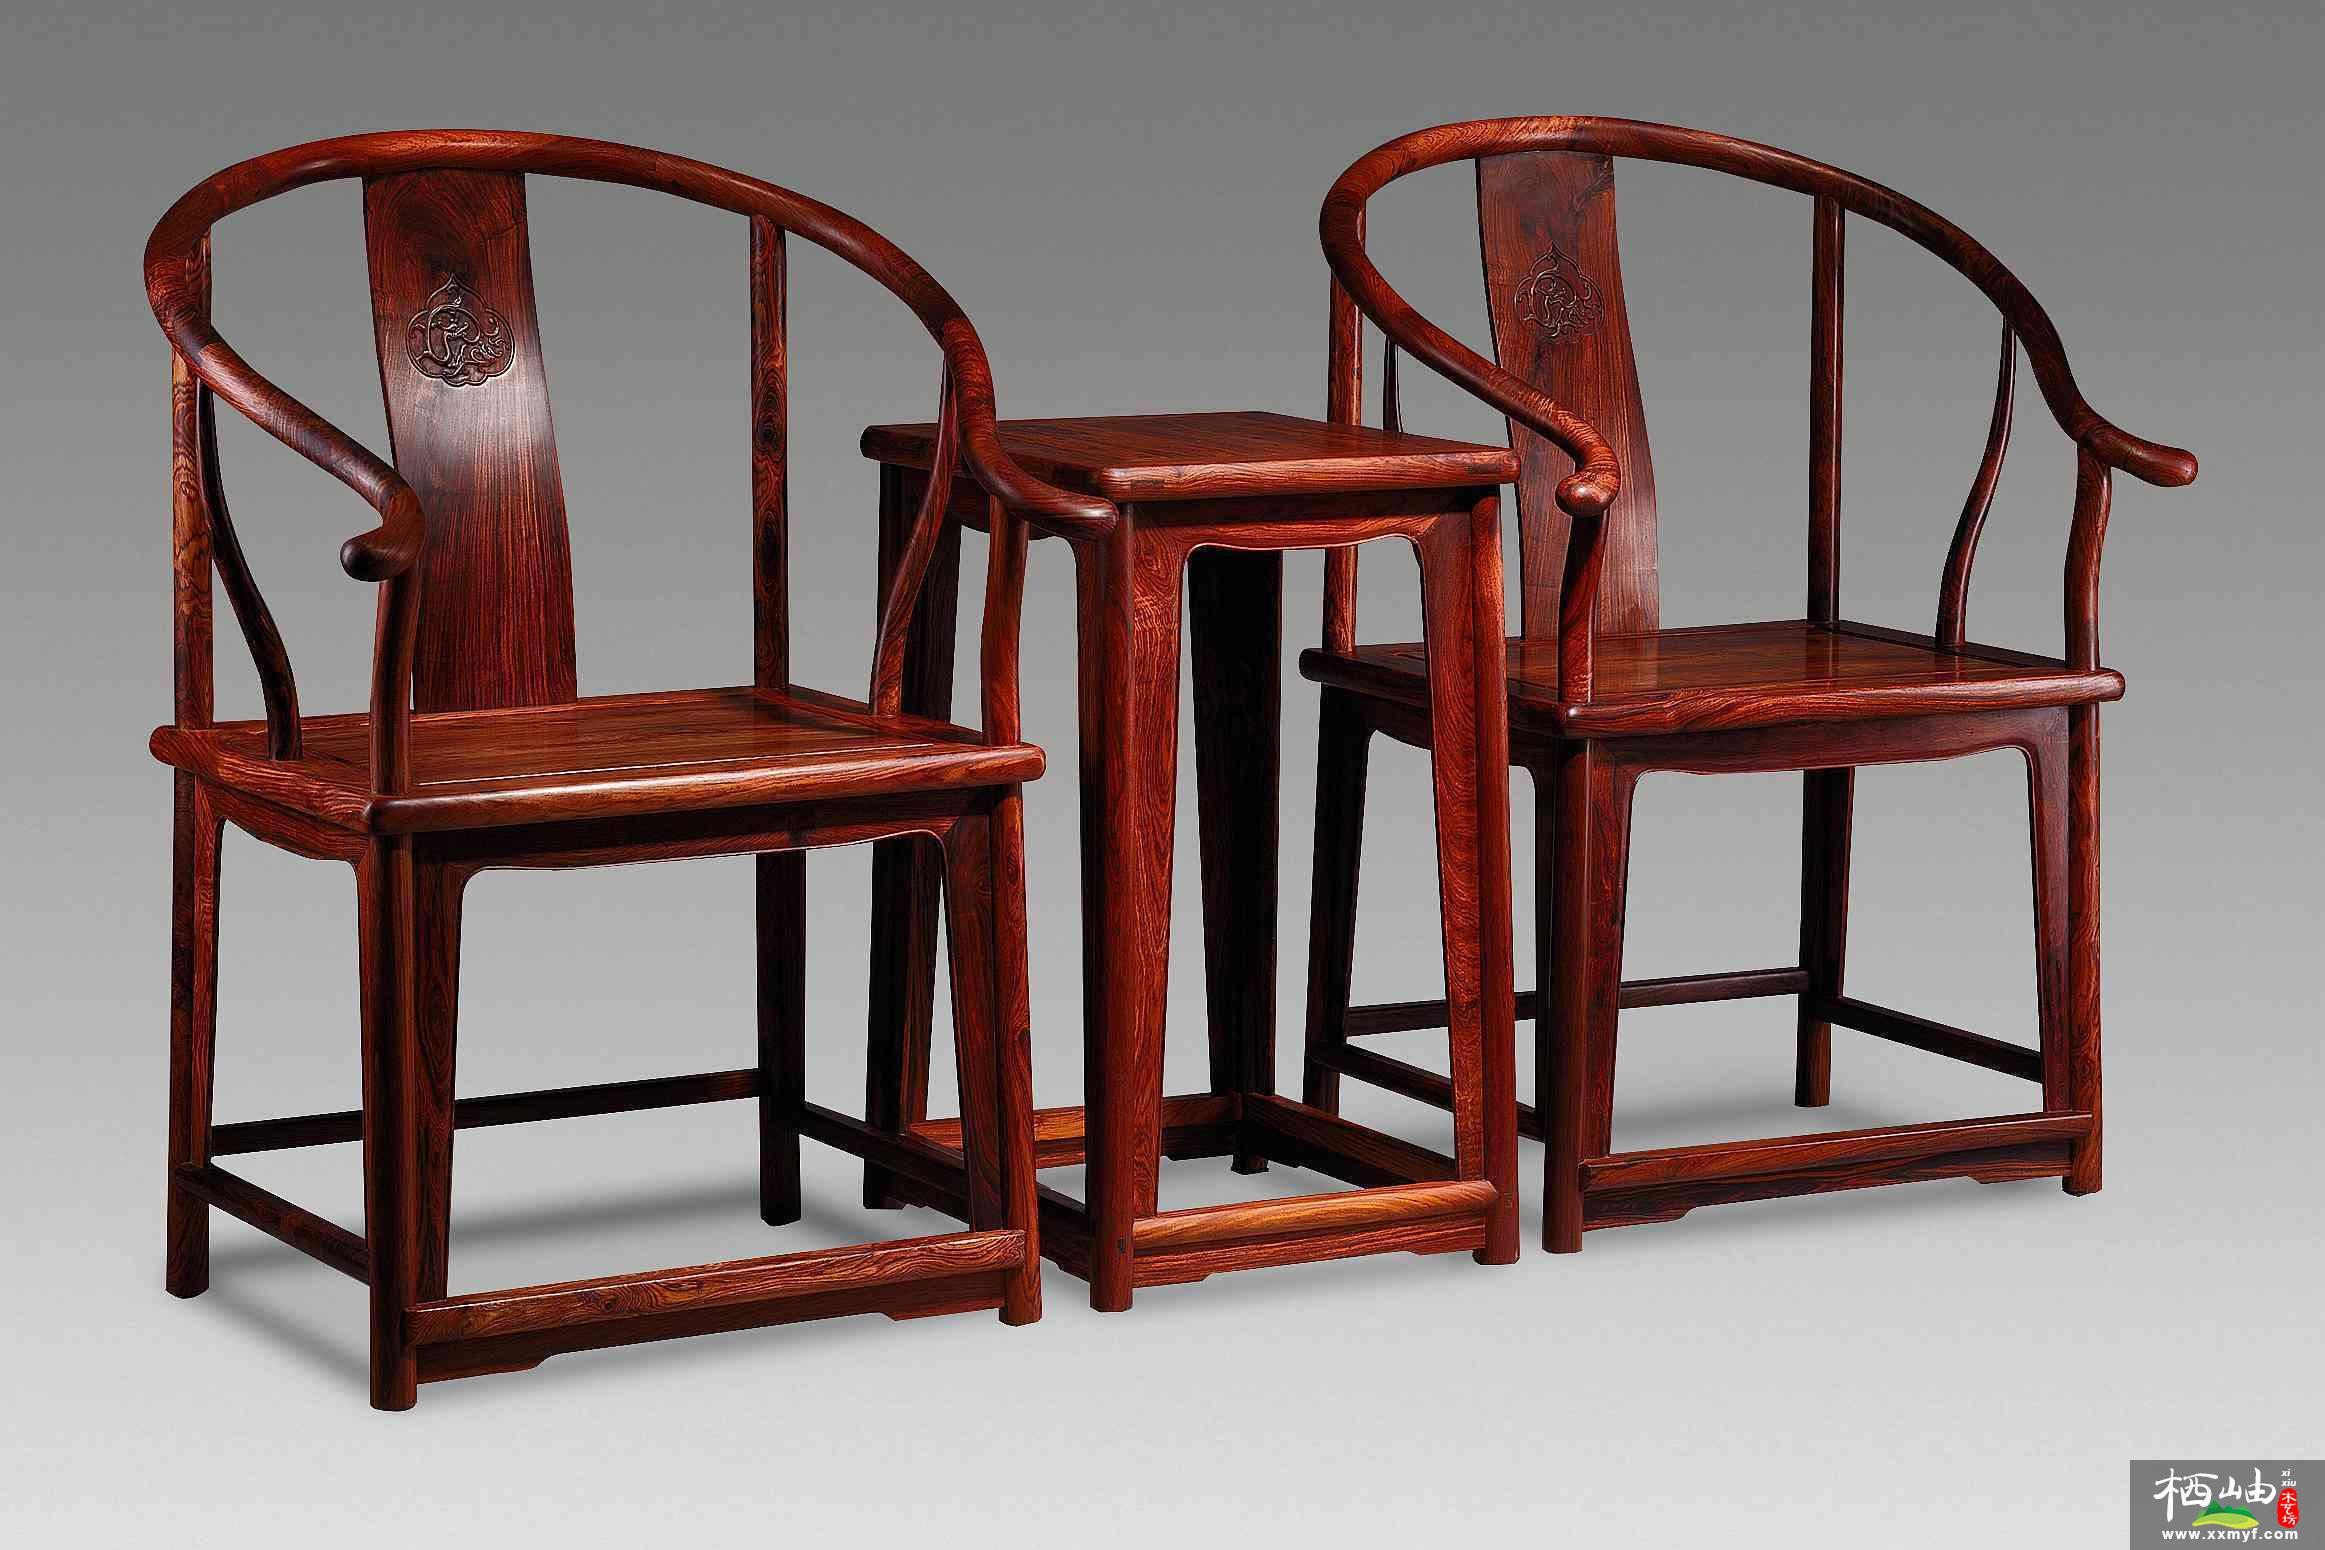 老红木雕龙宝座沙发定做红木家具价格、东阳木雕图、明清古典家具款式 - 东阳鲁创红木家具有限公司